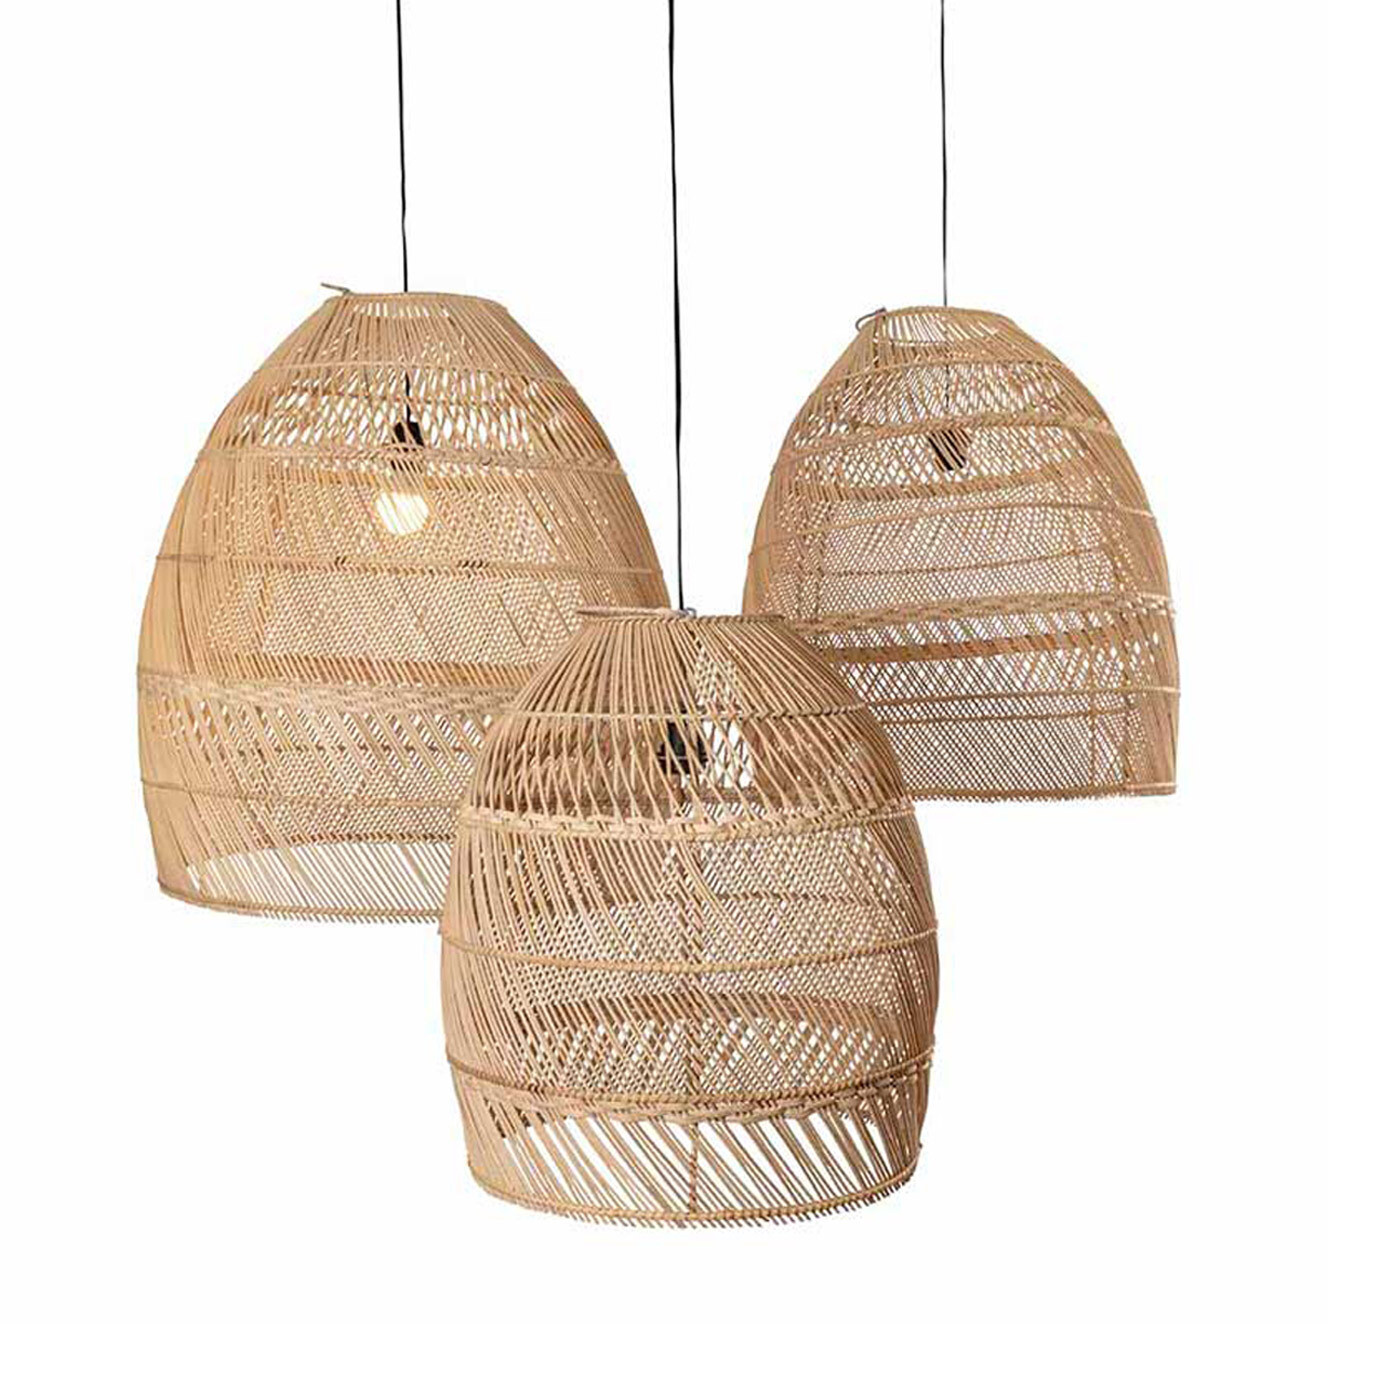 Boho lampenkap uit Bali van rotan - naturel kleur eco design hanglampen van merk Orginal Home (Moon) van 3 of los)